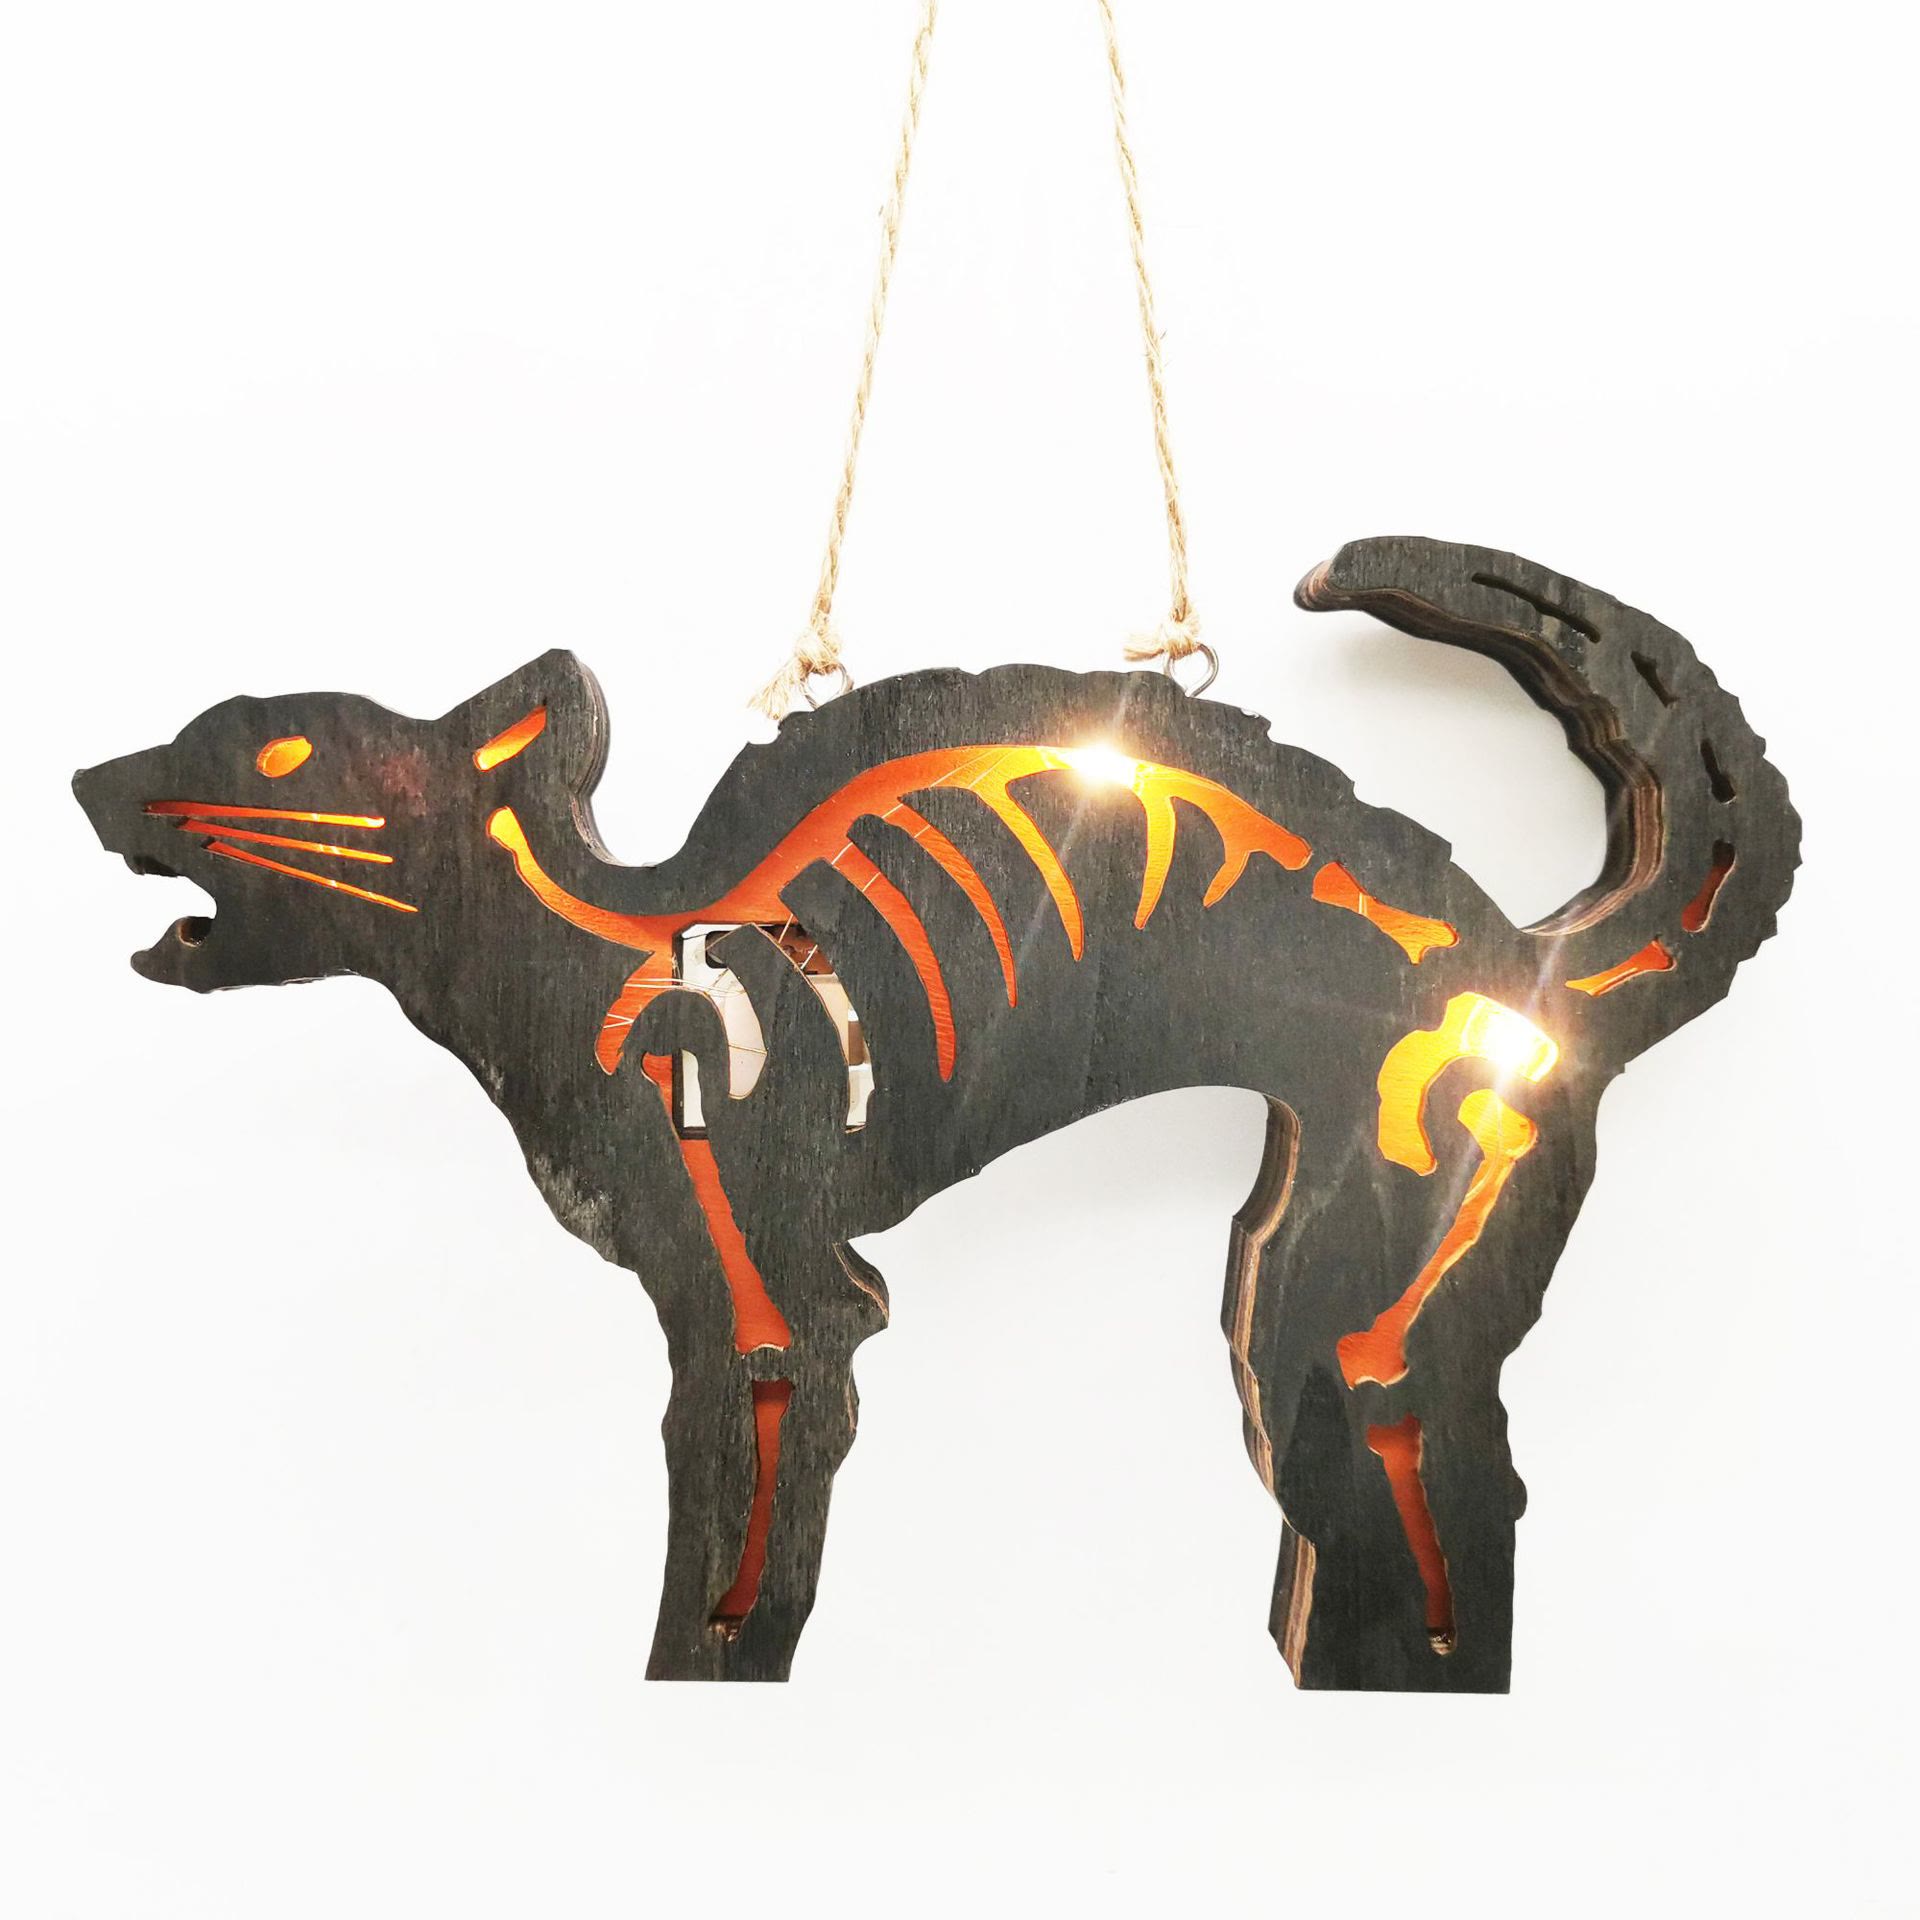 3D Handcraft Wooden Little Cat Home Decor Lights Wood Halloween Ornaments Gift